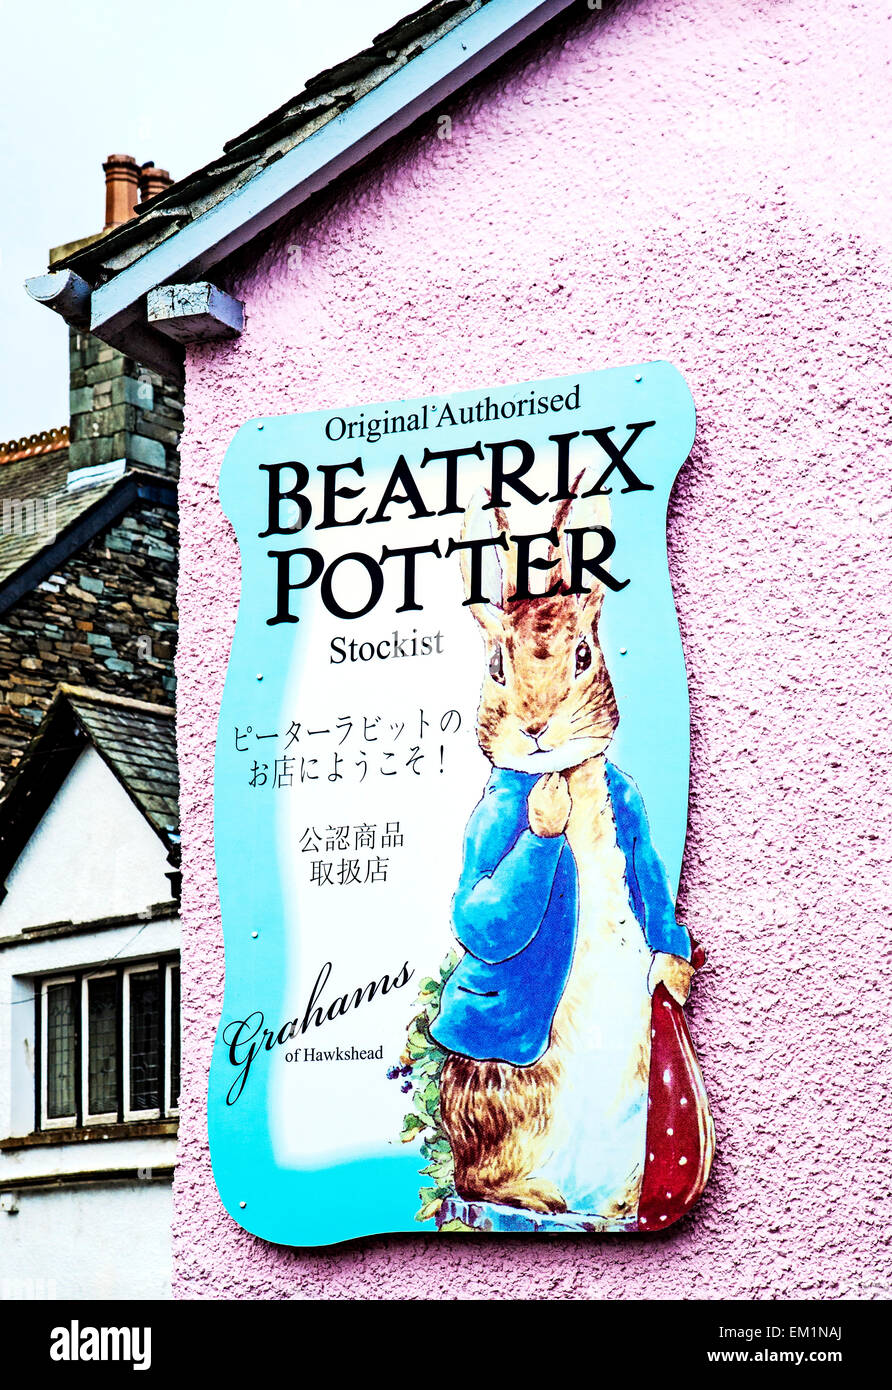 Hawkshead, village of Beatrix Potter and her creations; advertising; Werbung für Produkte von Beatrix Potter in Hawkshead Stock Photo